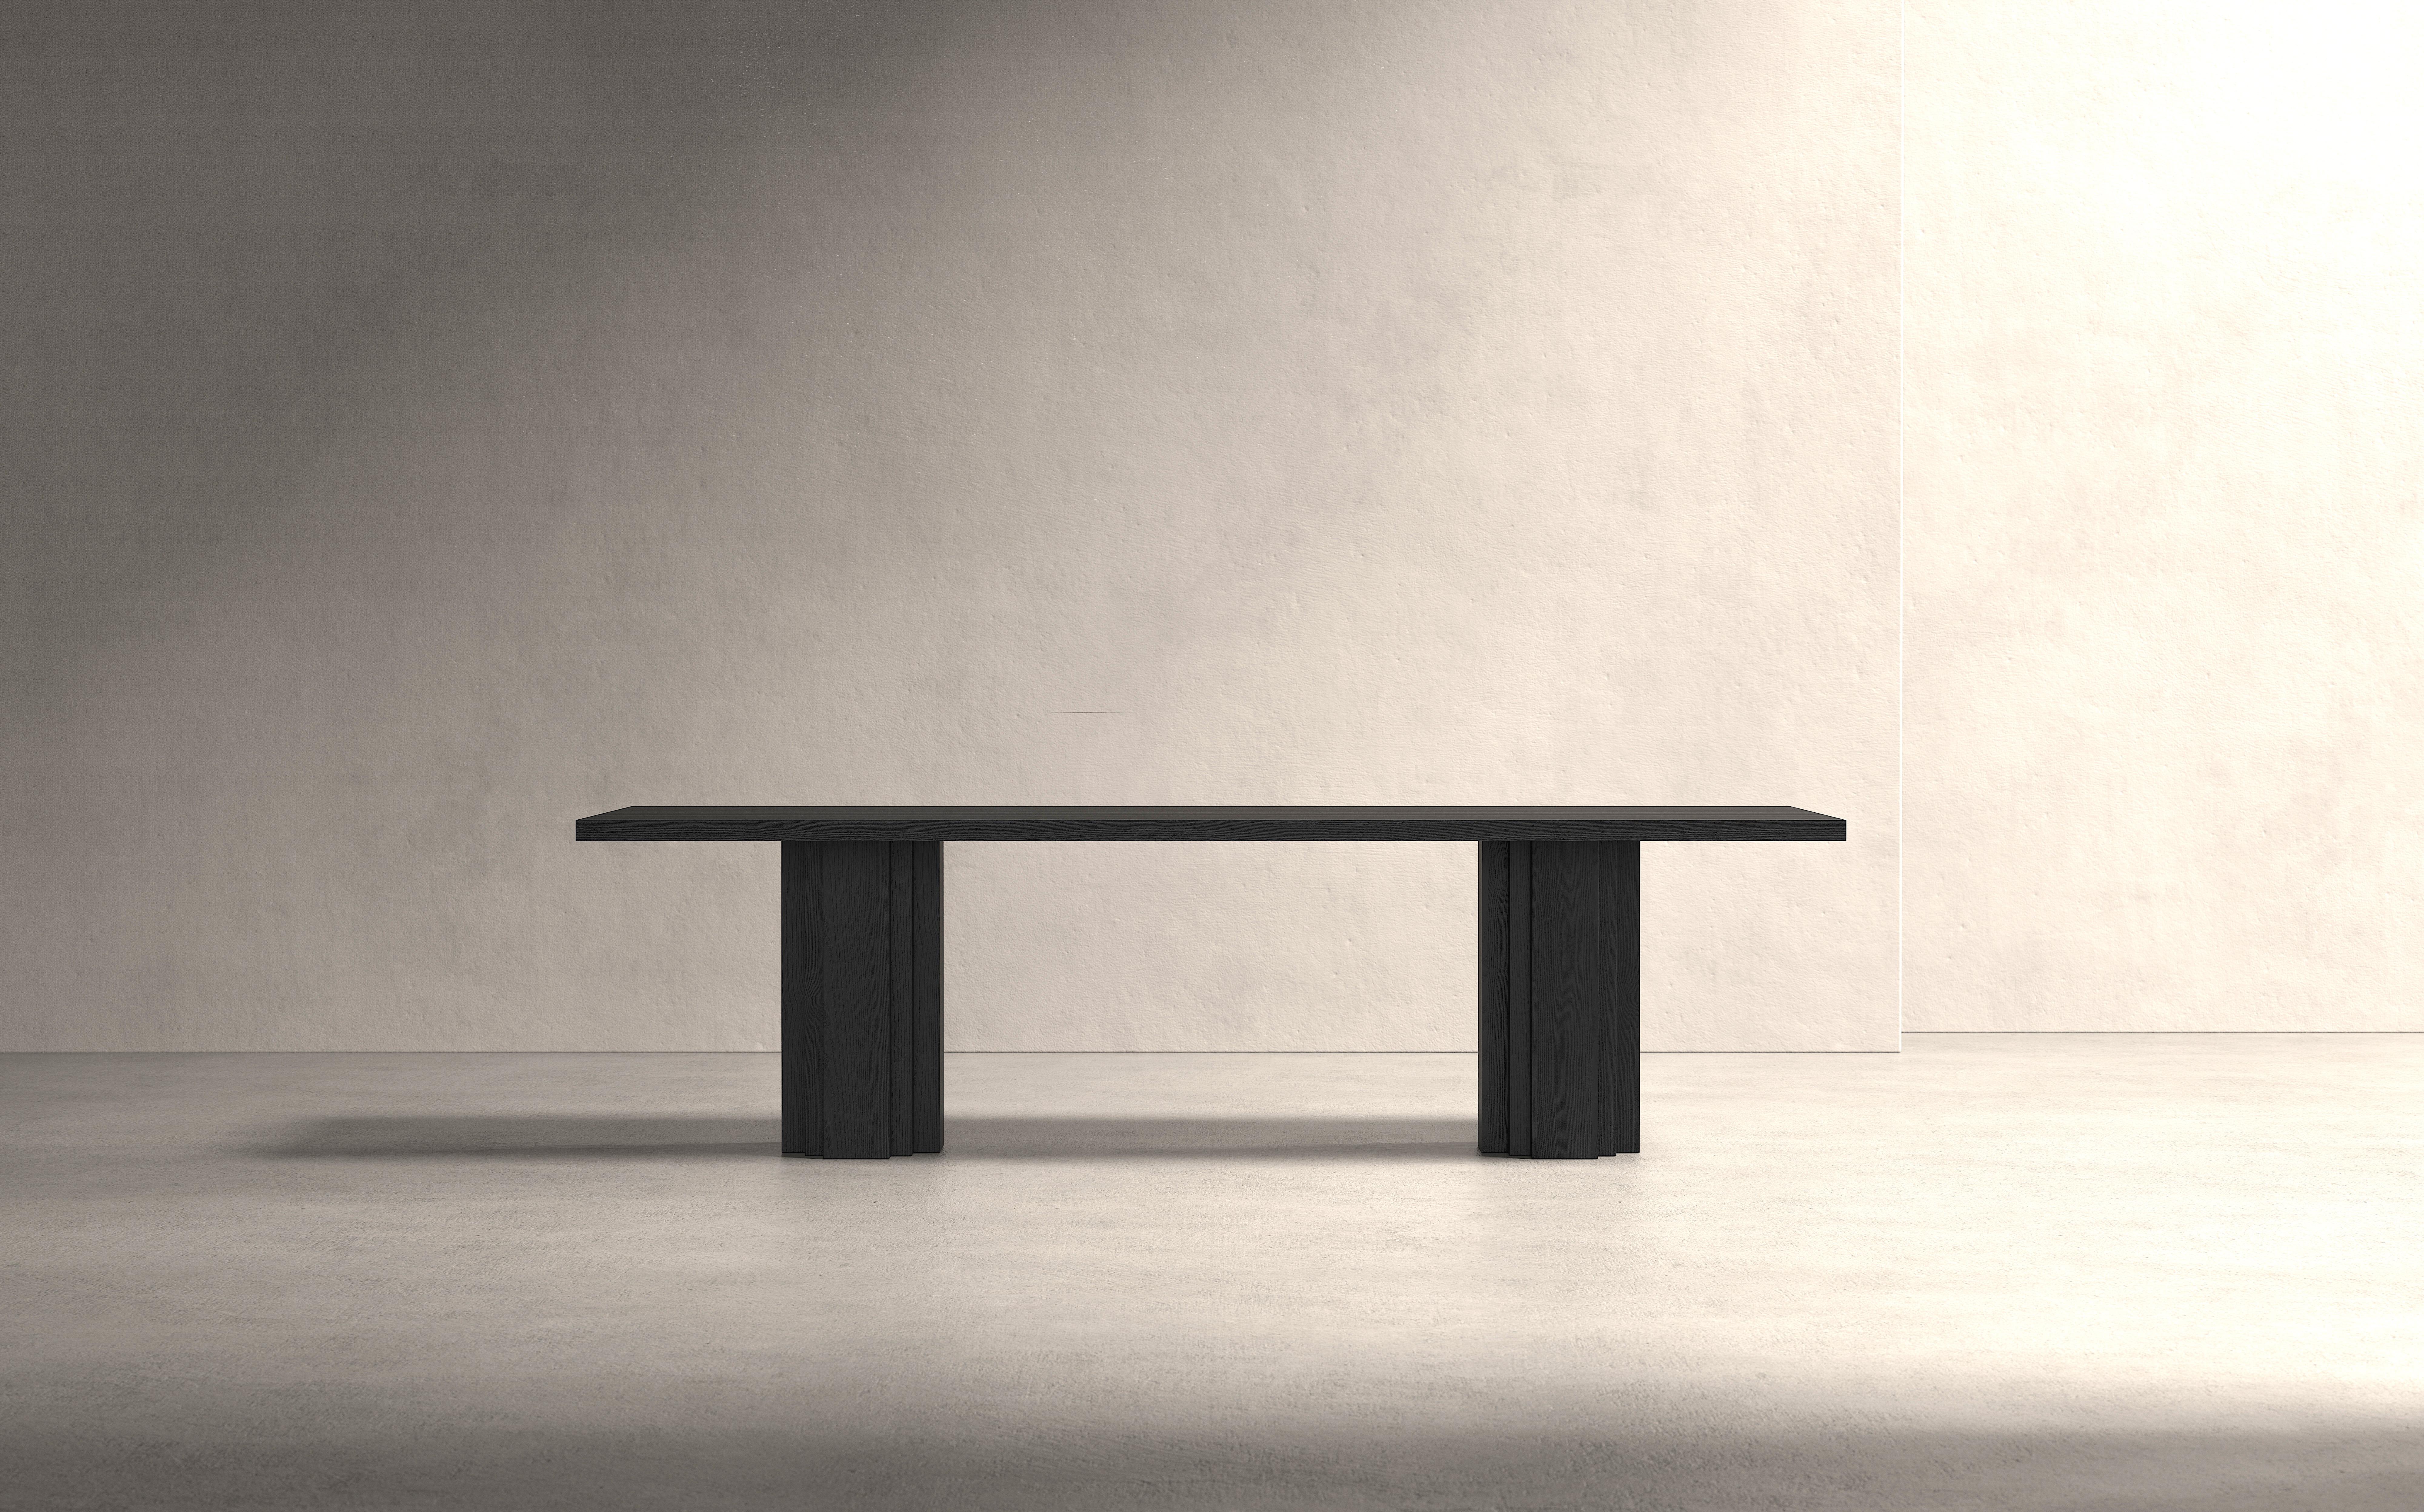 La table sculpturale Brut est inspirée par les styles architecturaux du Brutalisme et de l'École d'Amsterdam et est fabriquée en bois dur massif. Un banc assorti est disponible. La table est fabriquée sur mesure et entièrement